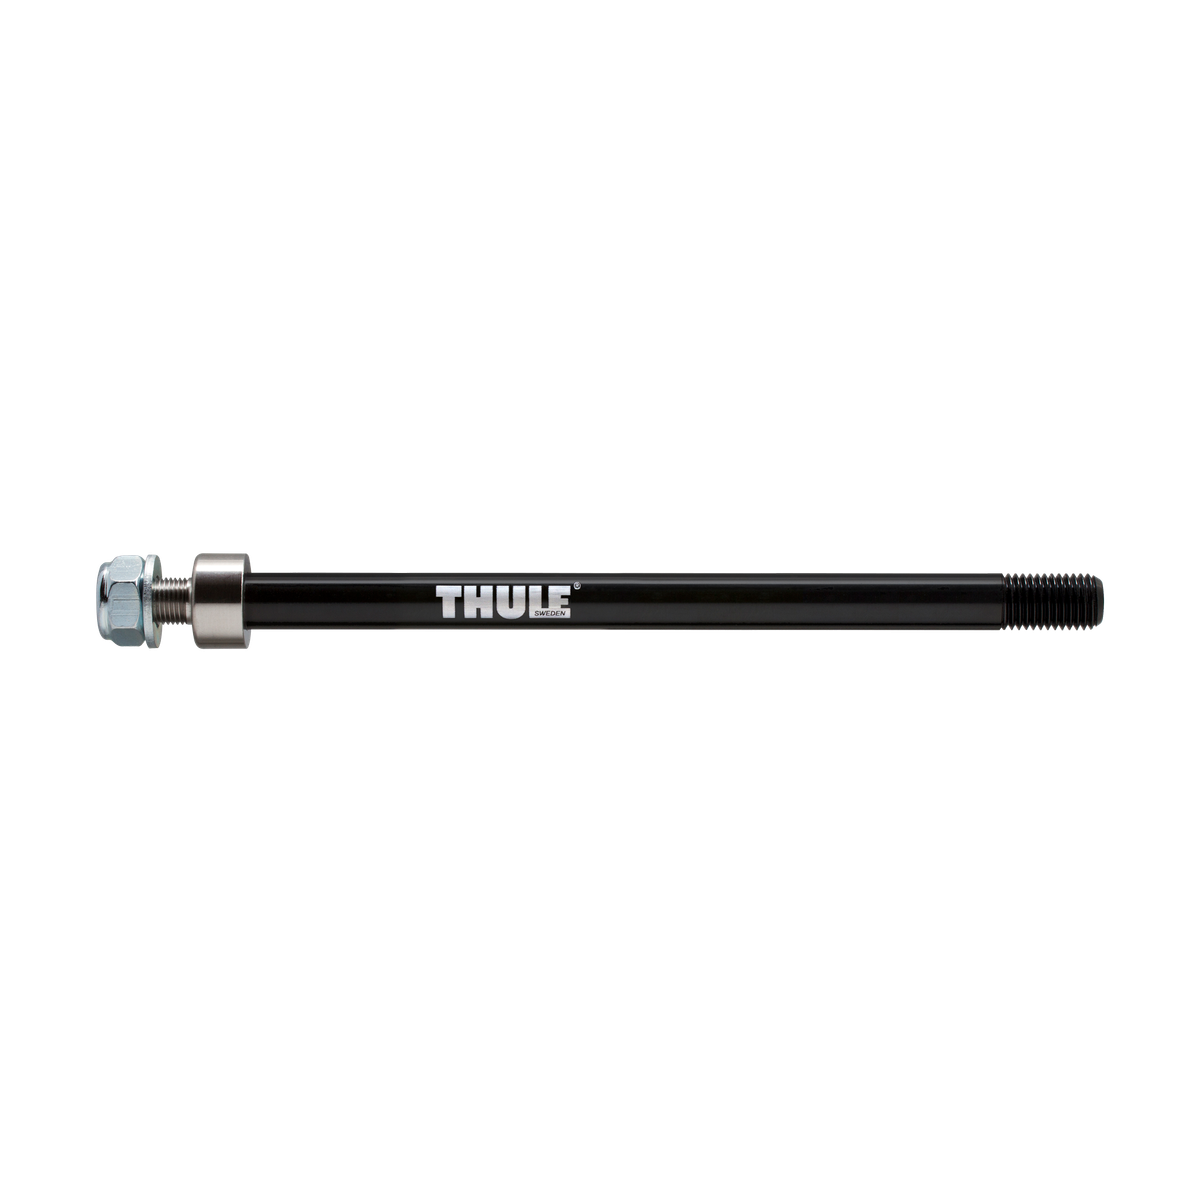 Thule thru axle Maxle (M12 x 1.75) thru axle Maxle M12 x 1.75 217 or 229mm black